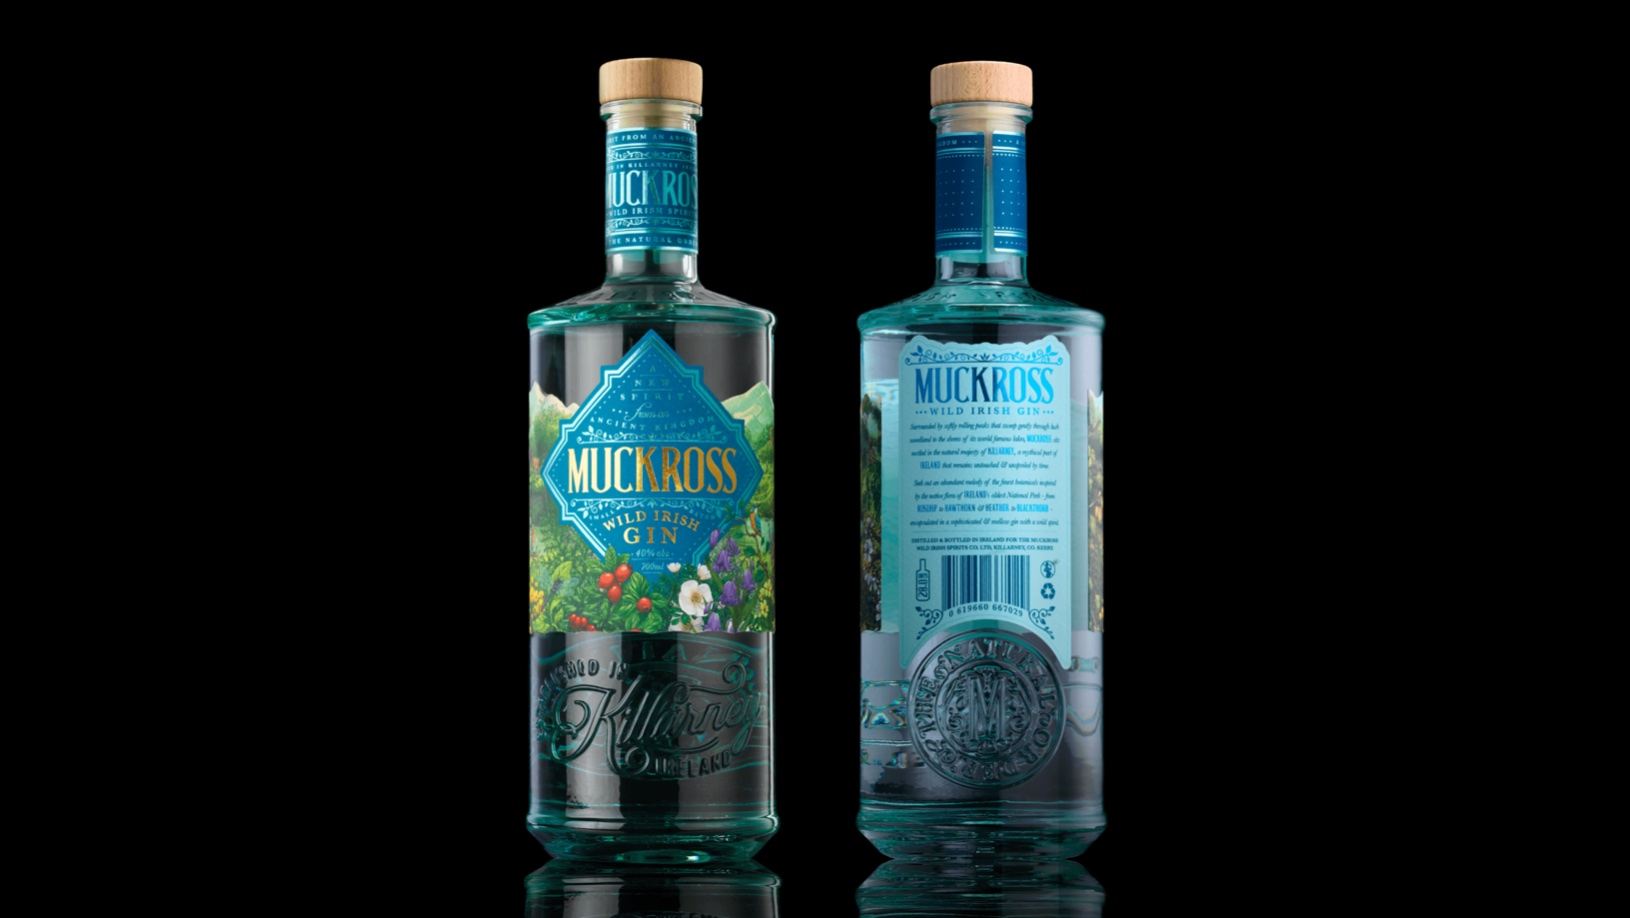 Muckross Wild Irish Gin Packaging Visualizes The Essence Of Botanicals